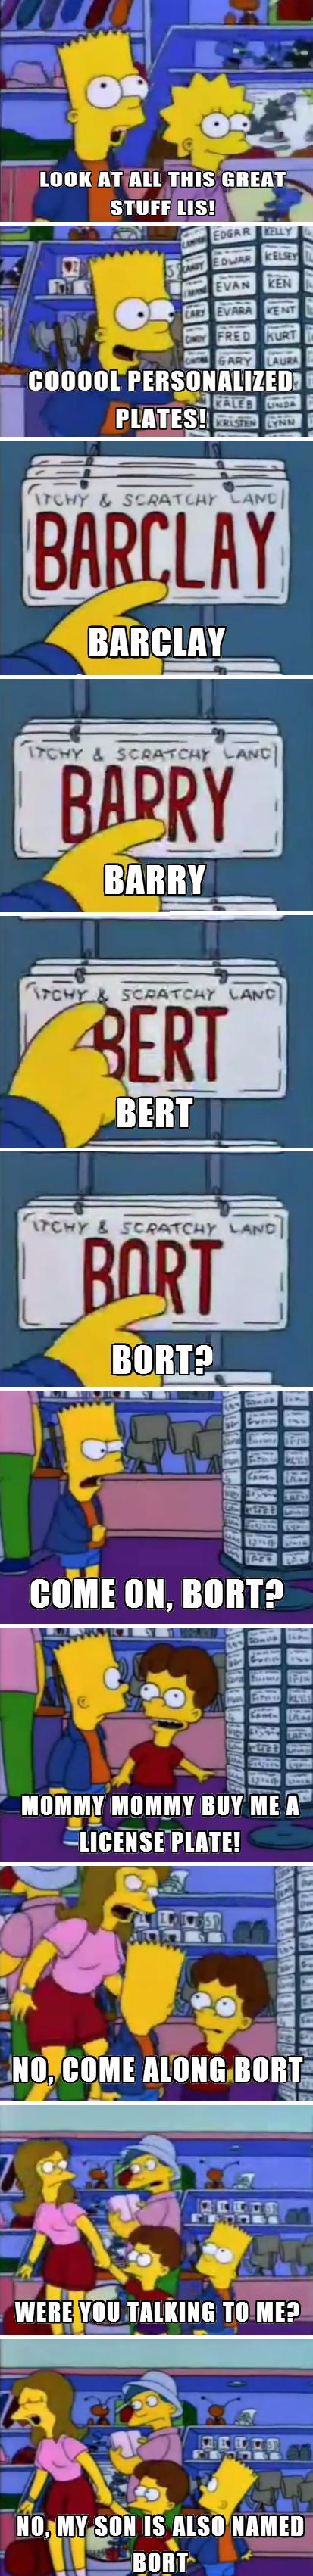 Bort Simpson.